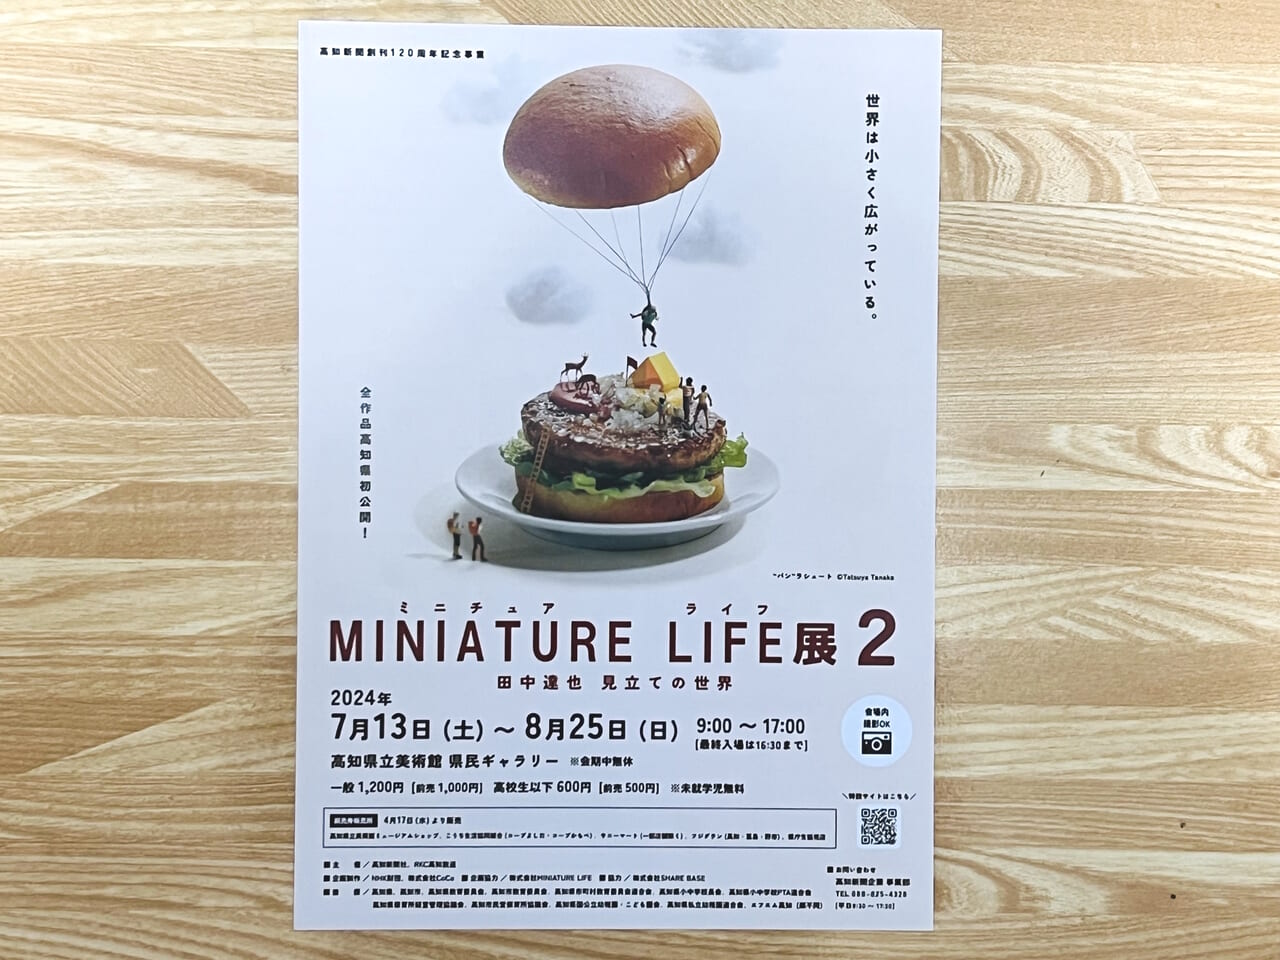 2024年7月13日 ～ 8月25日の間、高知県立美術館で開催される「MINIATURE LIFE展2」のチラシ